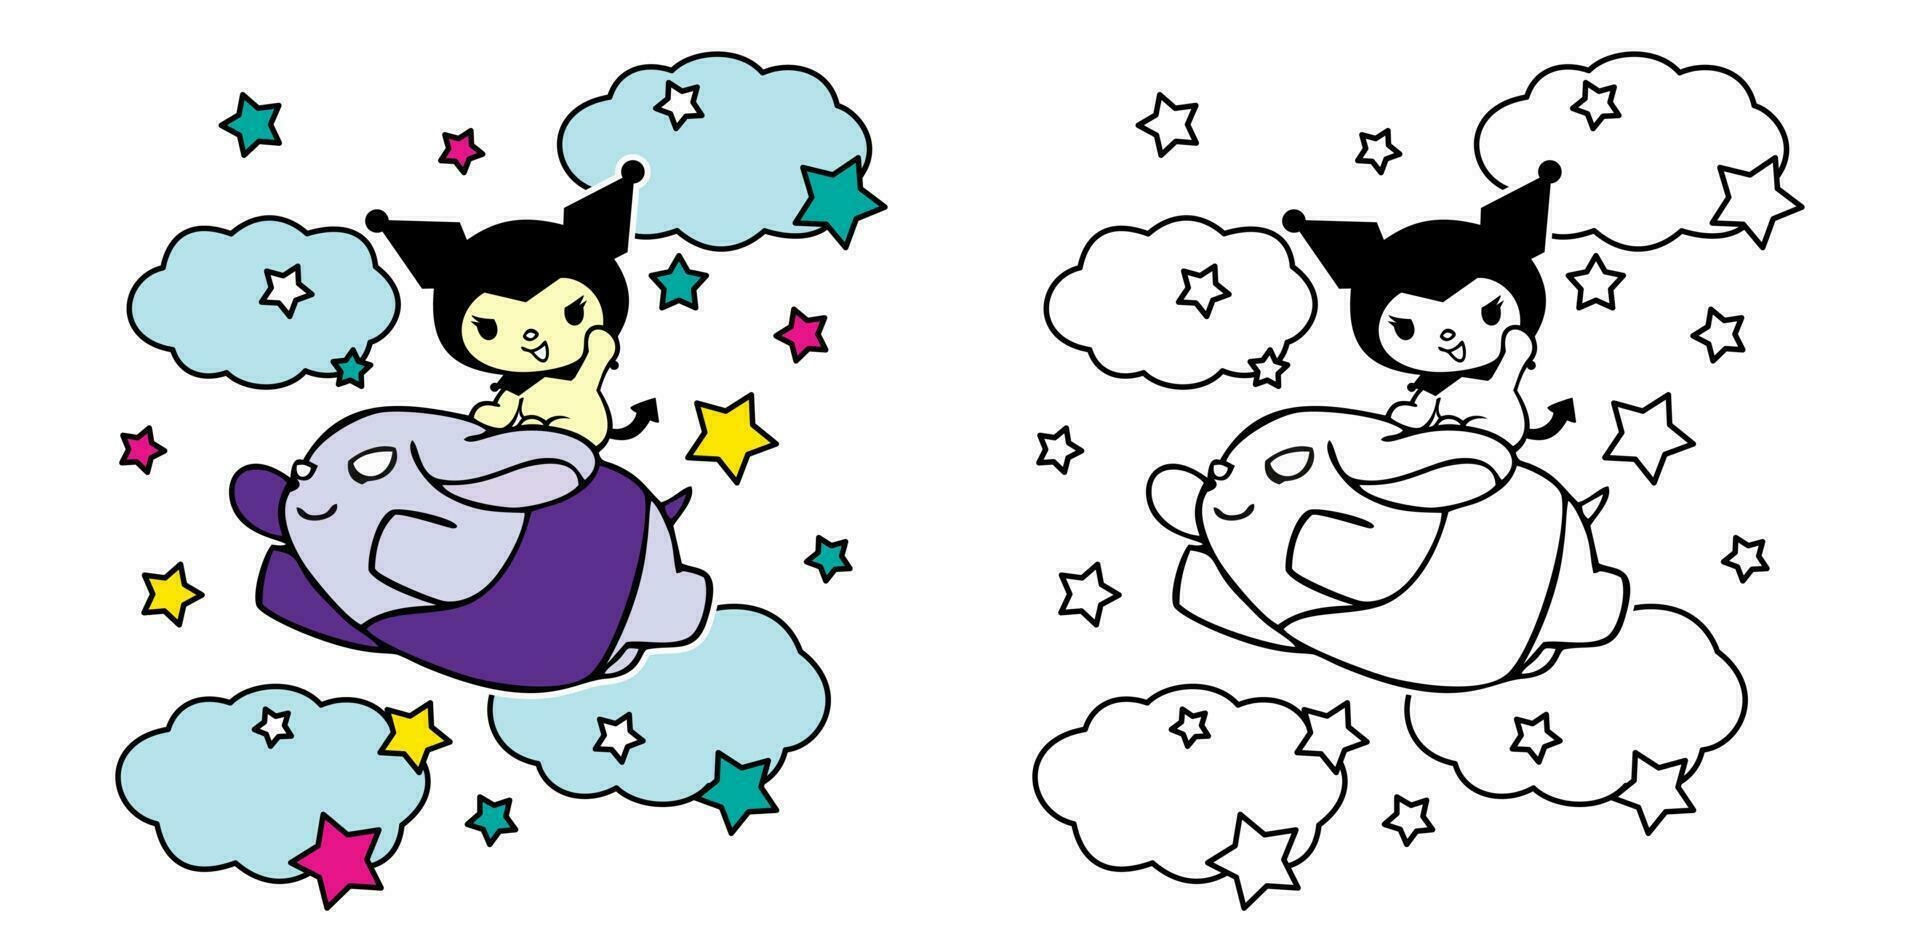 Vektor Illustration von süß Karikatur Katze mit Wolke und Sterne zum Färbung Buch Kinder, Zeichnung Seiten Abdeckung, Bildschirm Drucken Hemden, druckbar Kleidung Materialien, Präsentationen und Decks Materialien